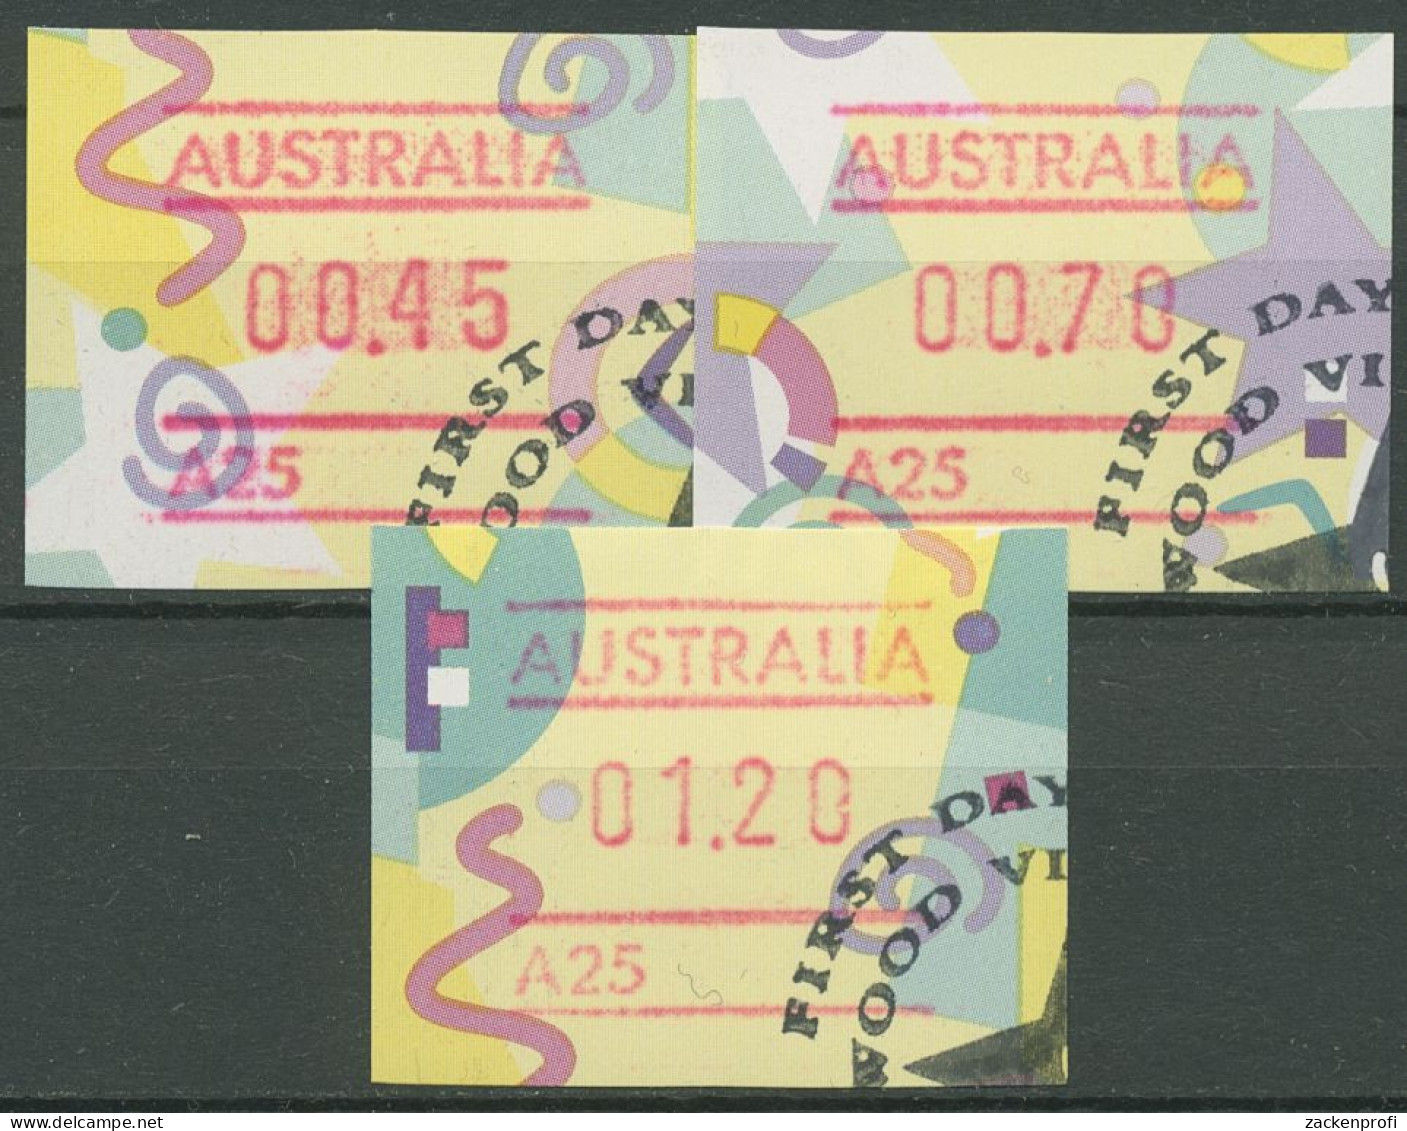 Australien 1996 Figuren Tastensatz Automatenmarke 51 S1, A 25 Gestempelt - Machine Labels [ATM]